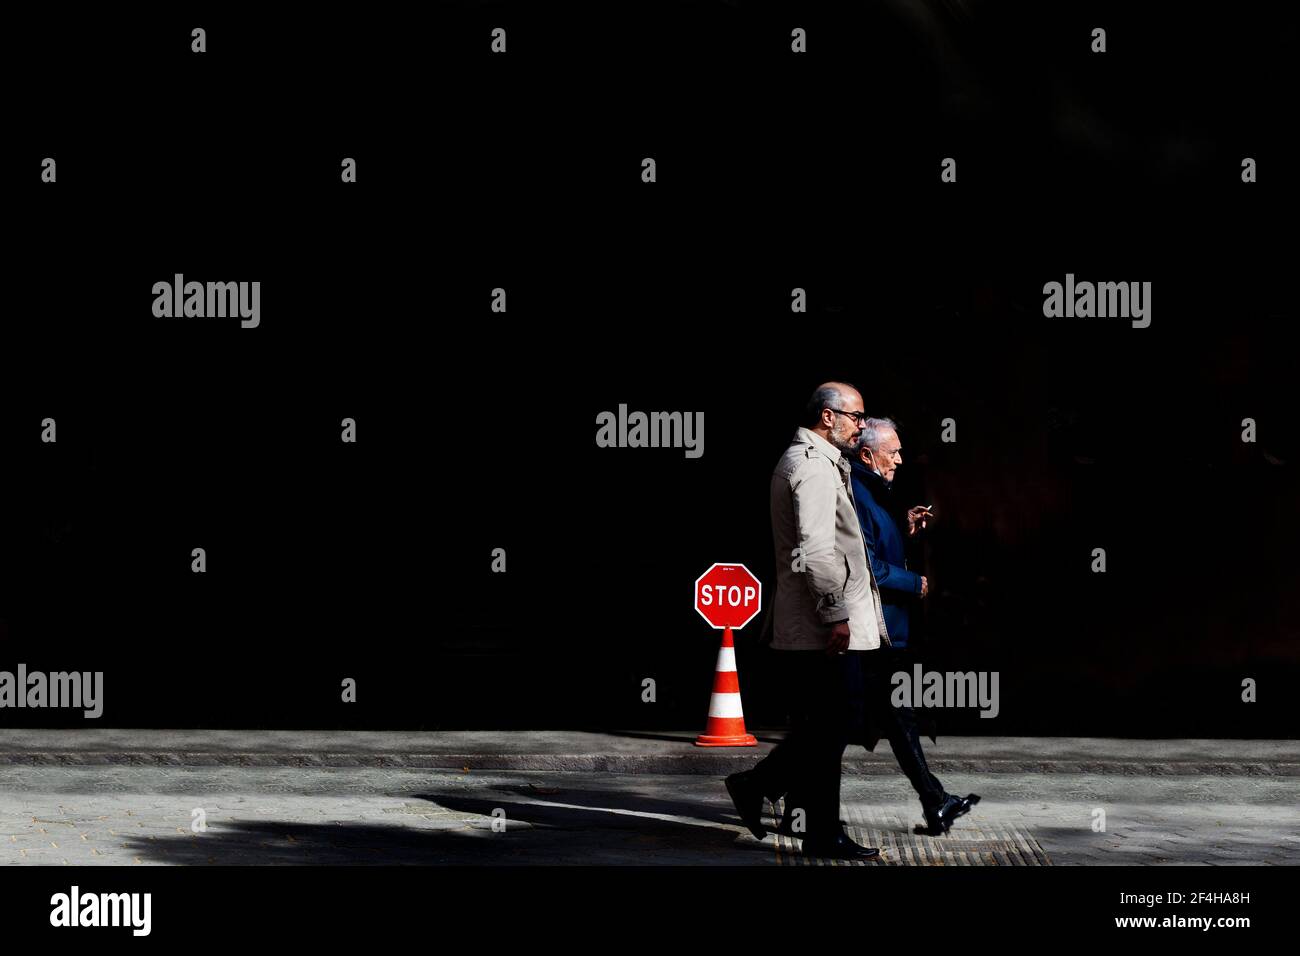 Two men smoking walking past Stop sign. Stock Photo